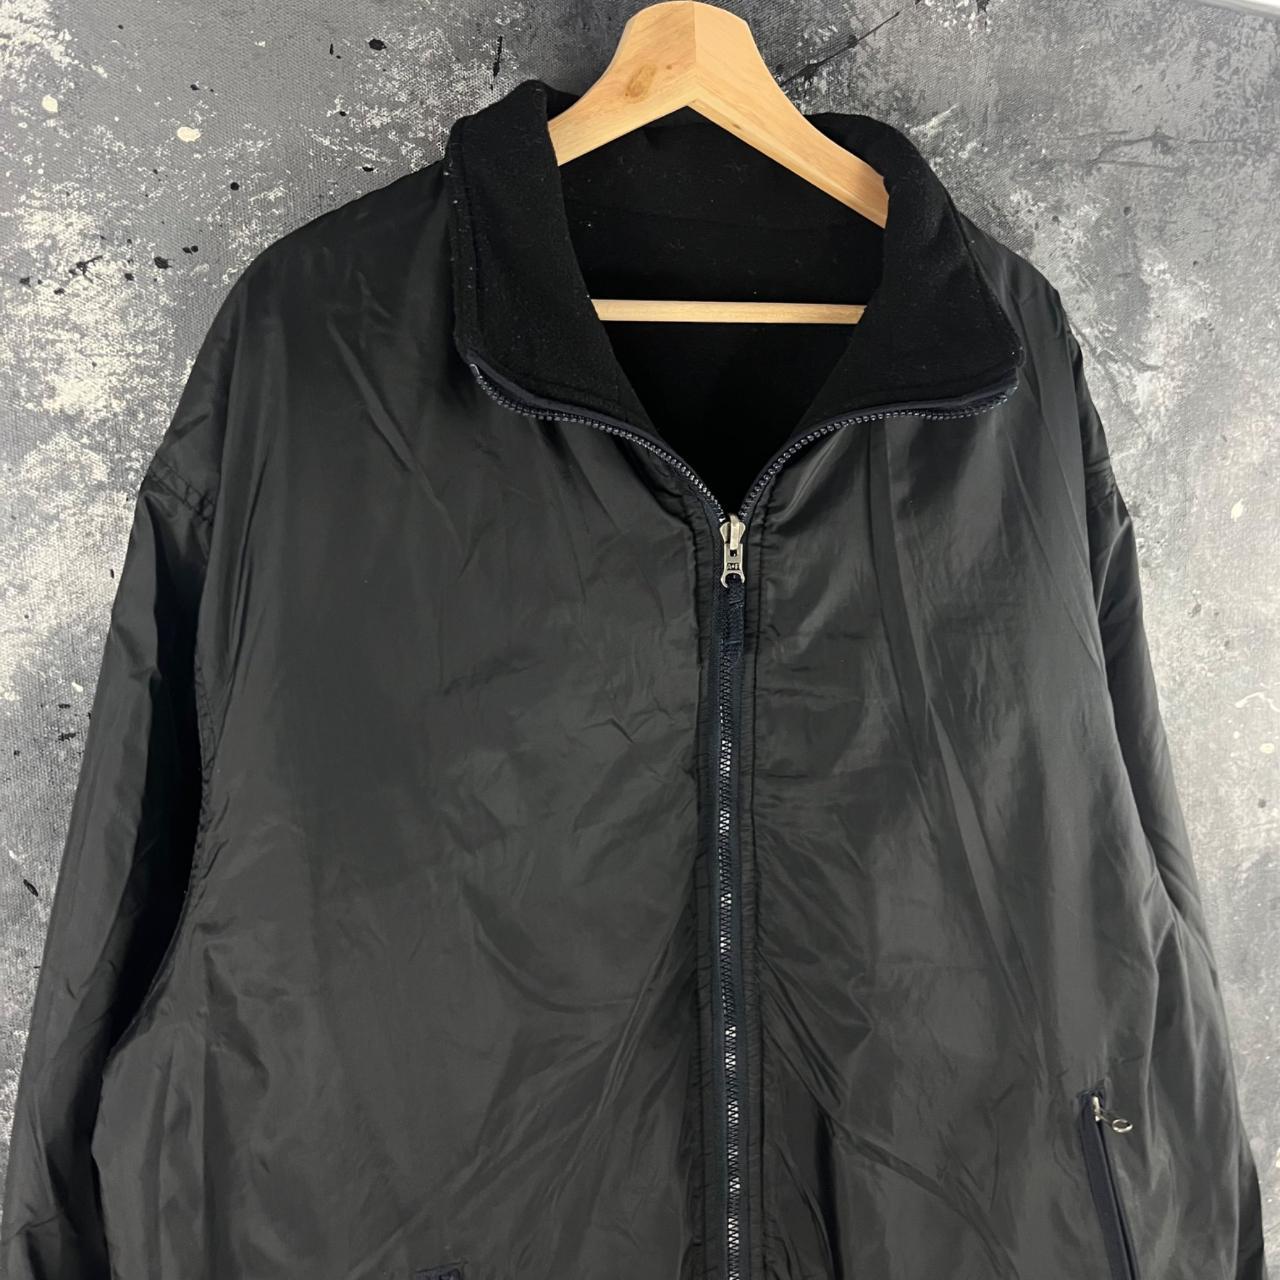 Vintage 80’s Abercrombie reversible jacket Great... - Depop